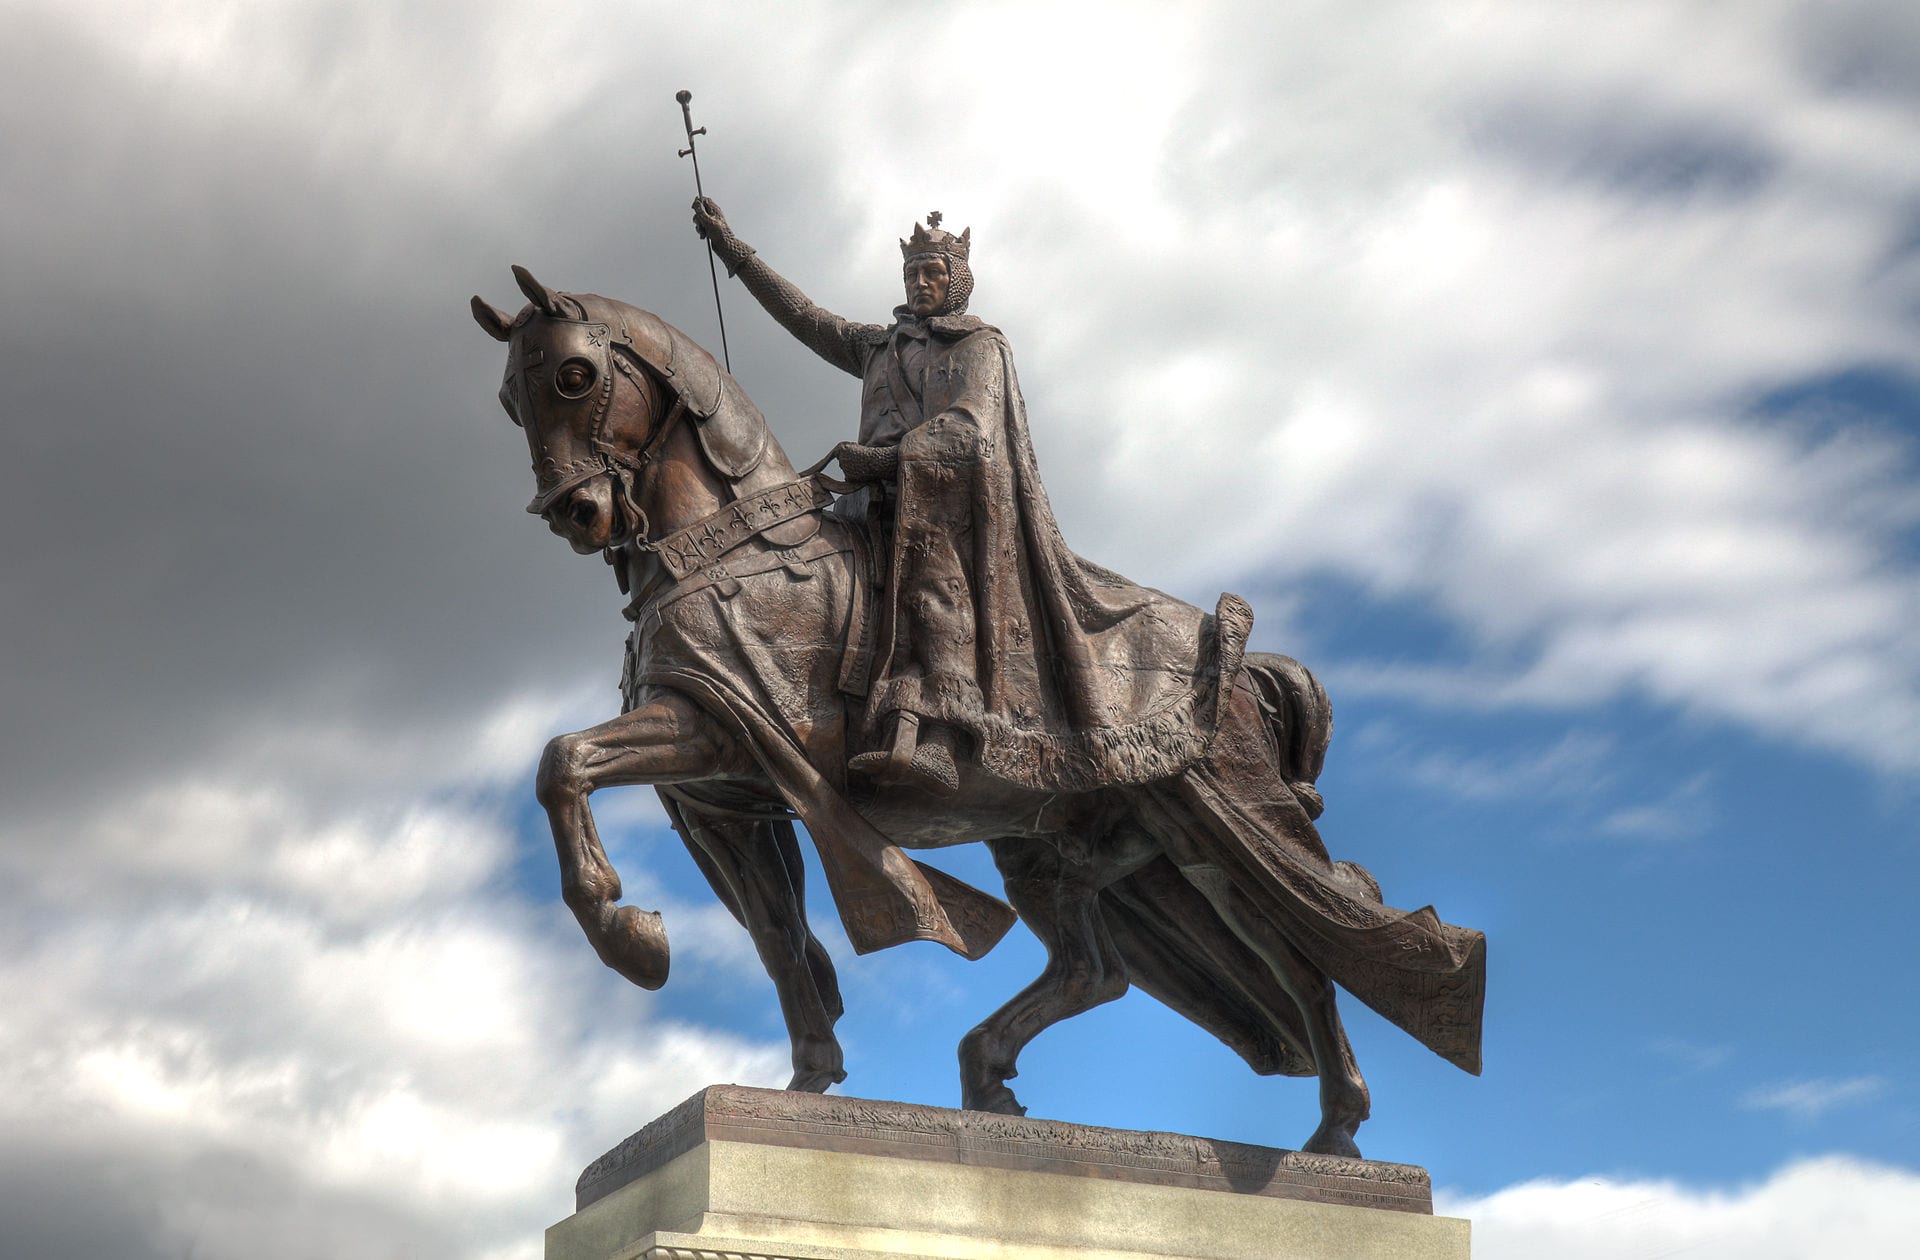 Saint-Louis (États-Unis) : des militants reprochent à Louis IX d’être antisémite, veulent abattre sa statue et changer le nom de la ville King_louis_statue_tonemapped